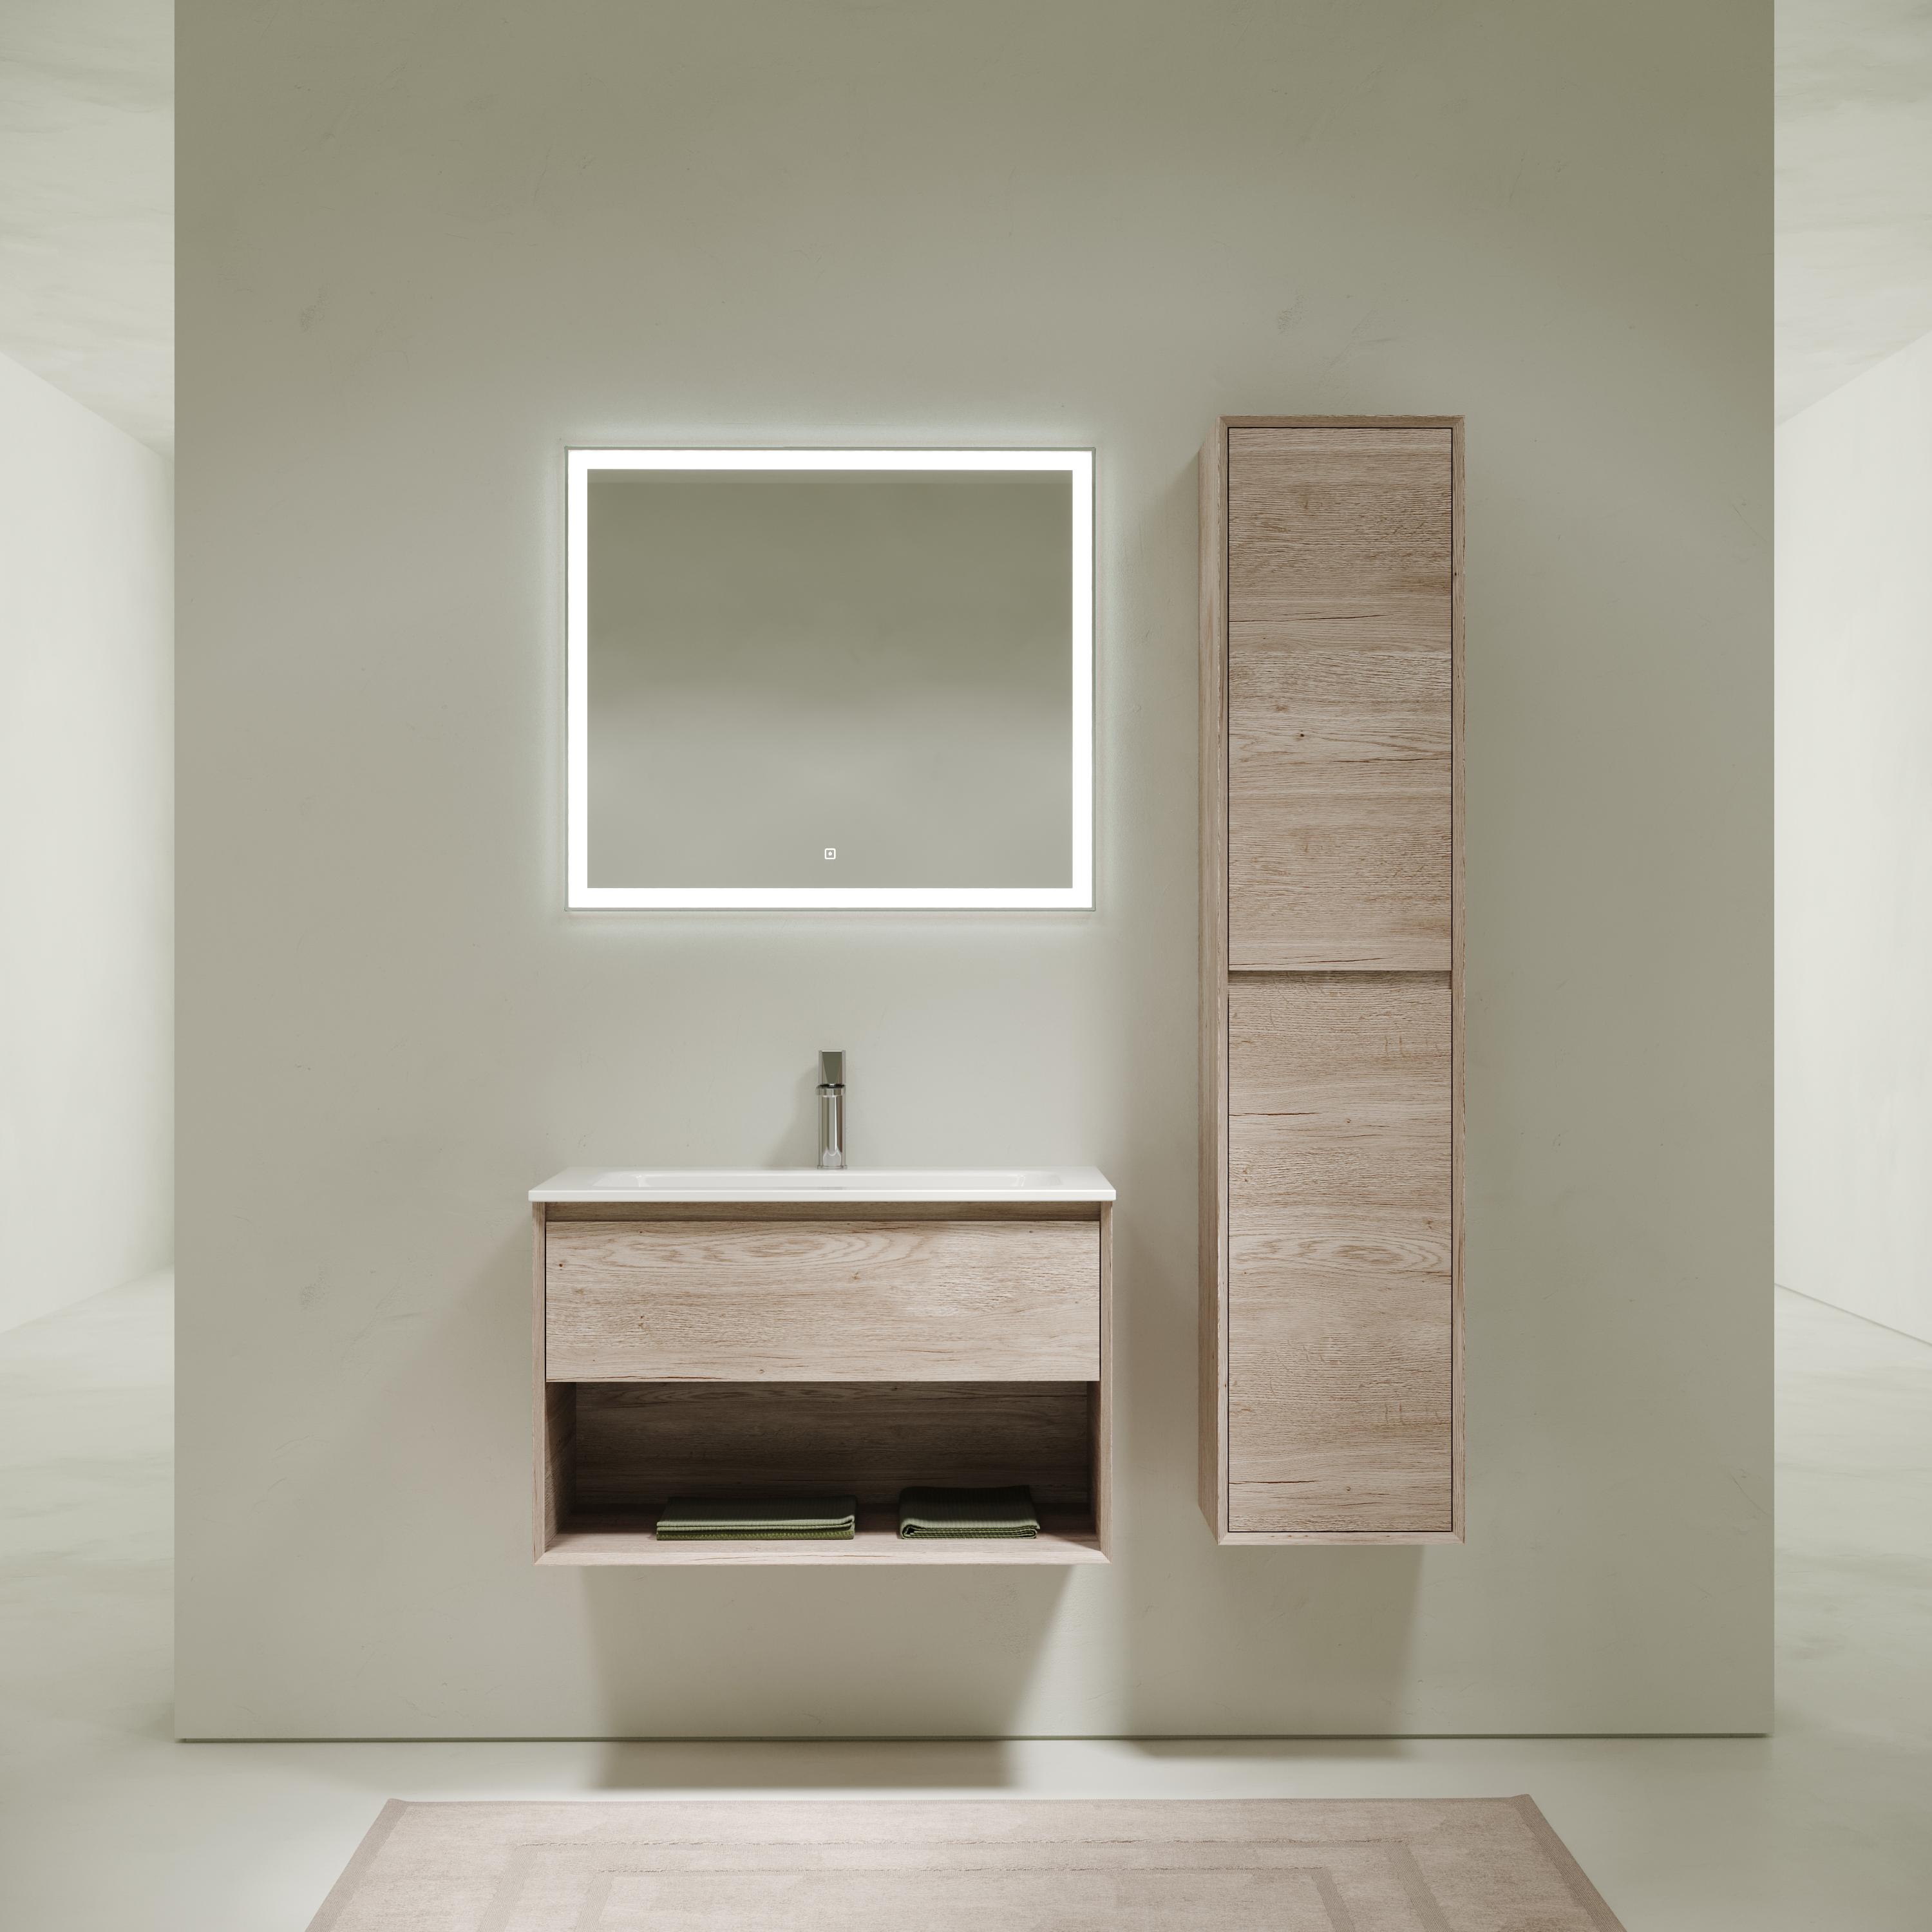 Мебель для ванной комнаты Sancos Marmi 1.0 80 см дуб галифакс натуральный, цвет коричневый MR1.080EG - фото 1